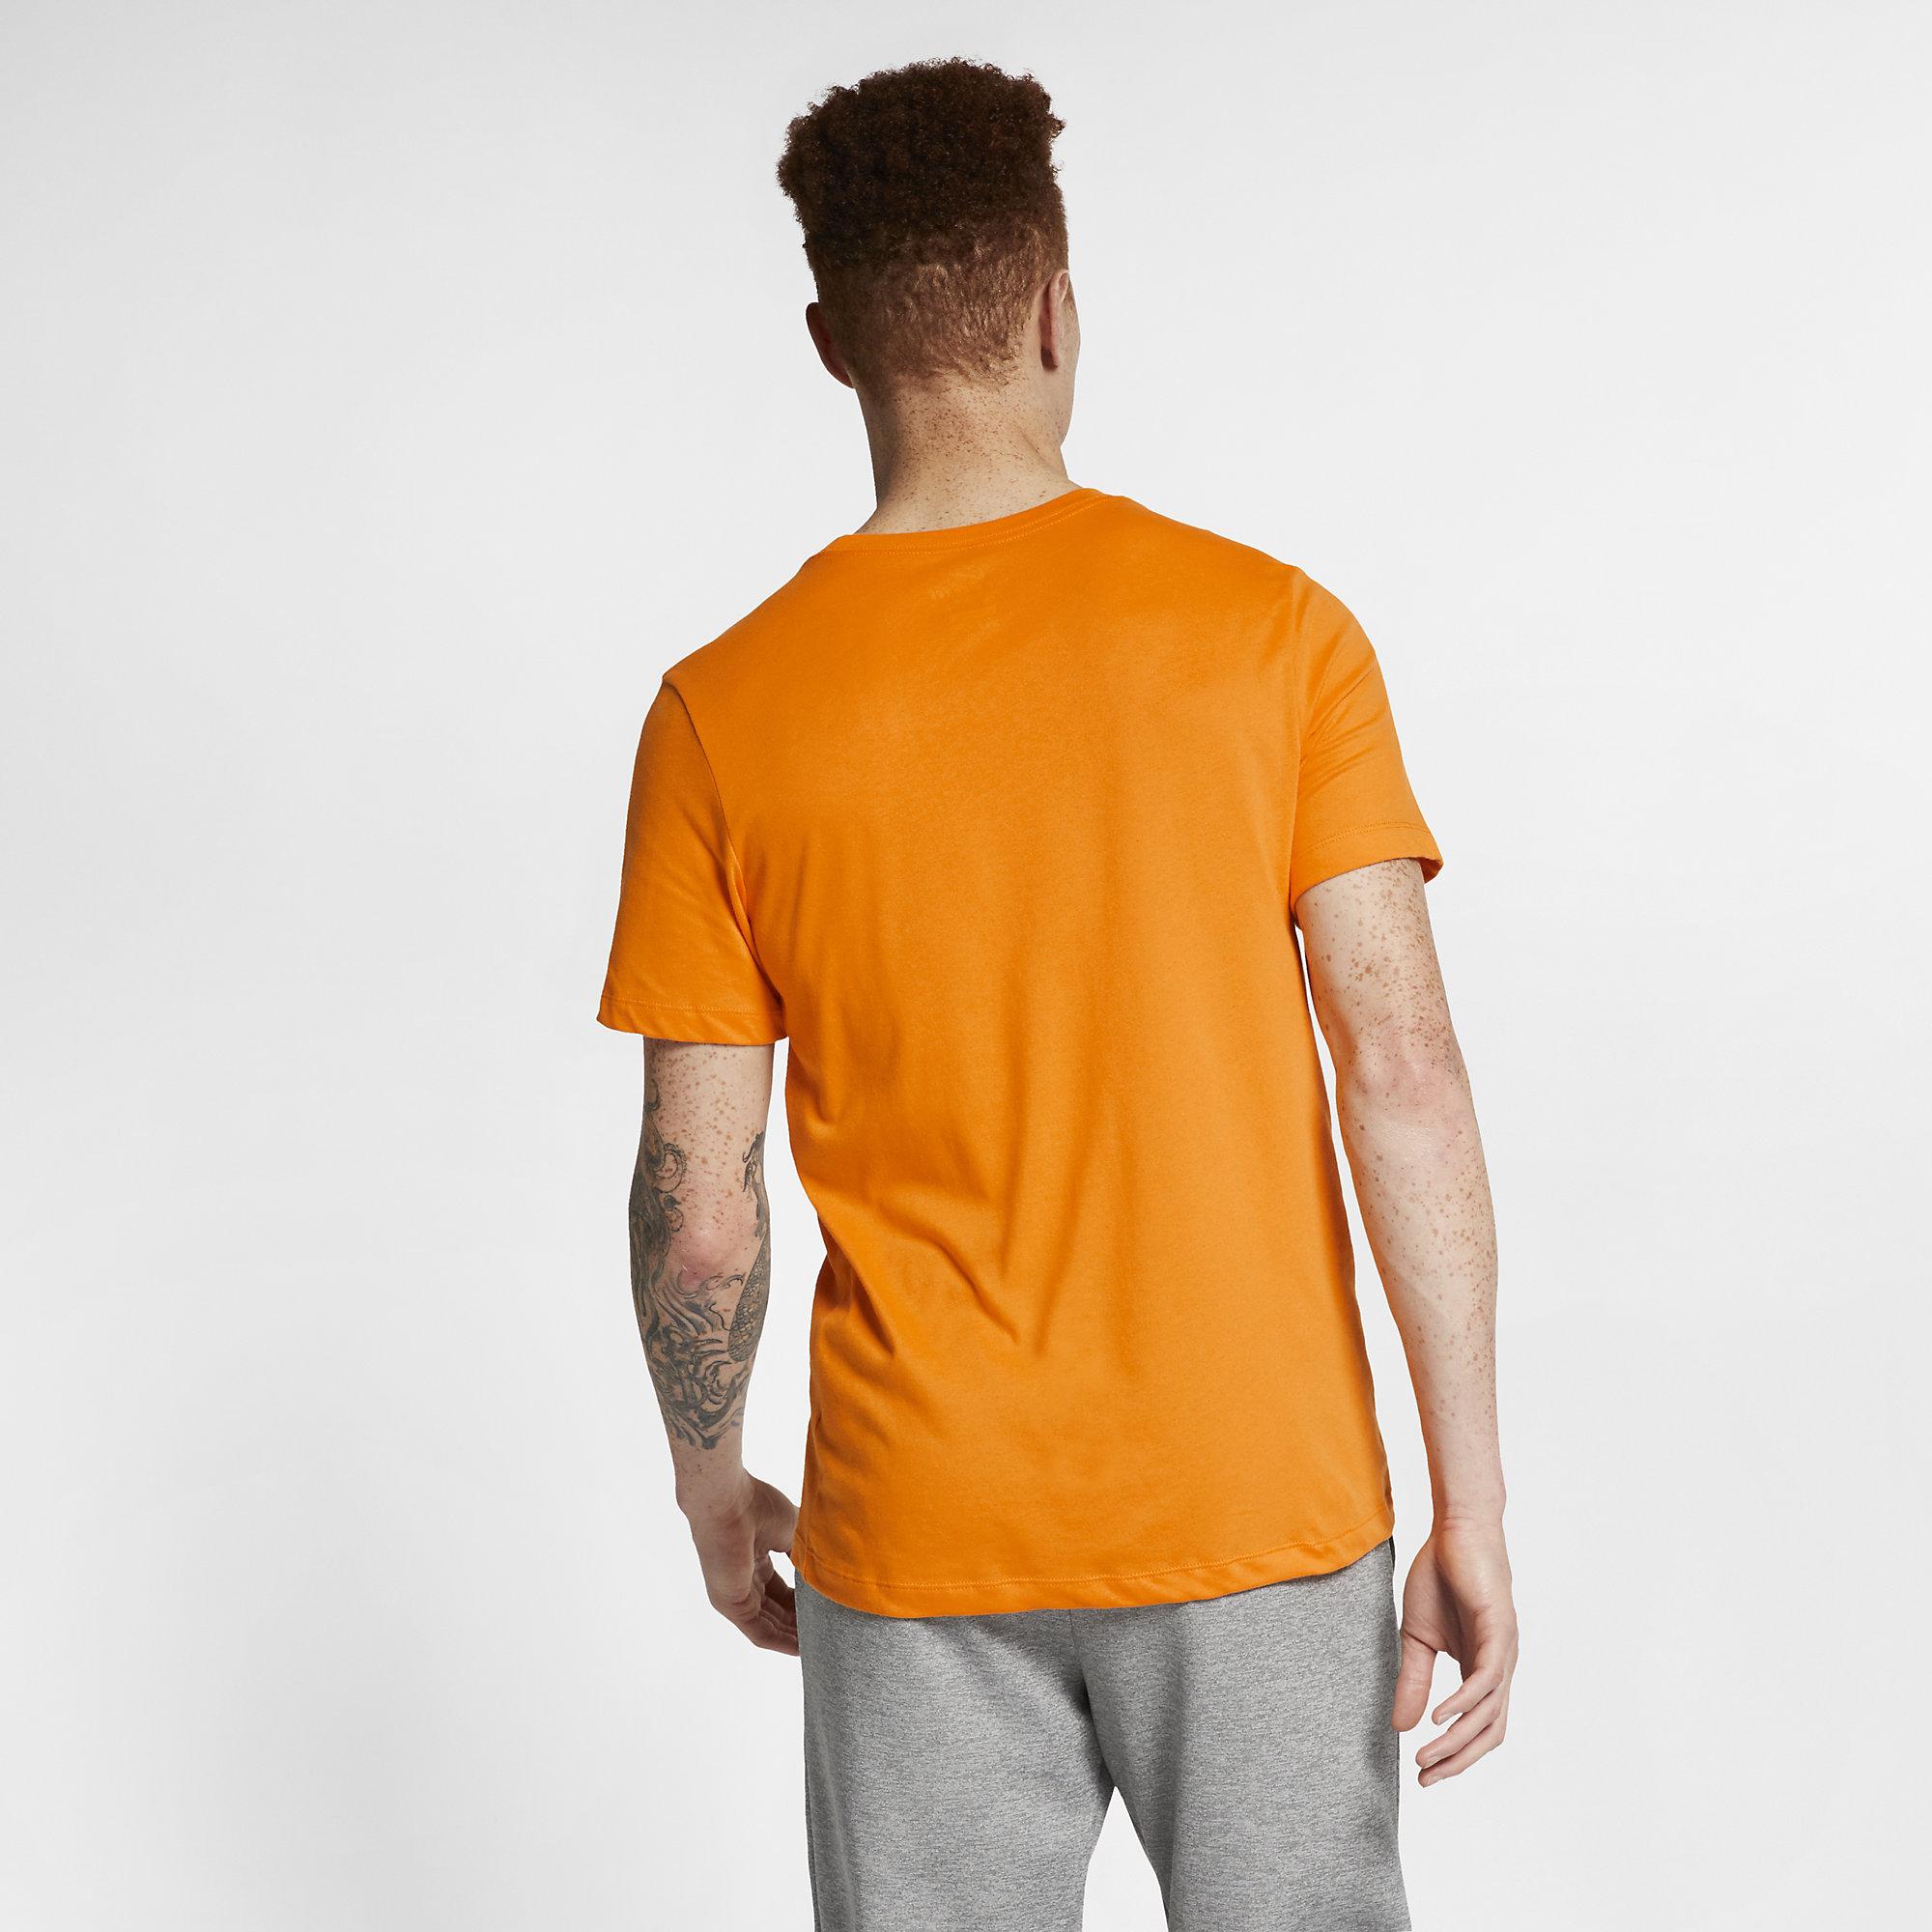 Nike Mens Dri-Fit Training Top - Orange Peel - Tennisnuts.com